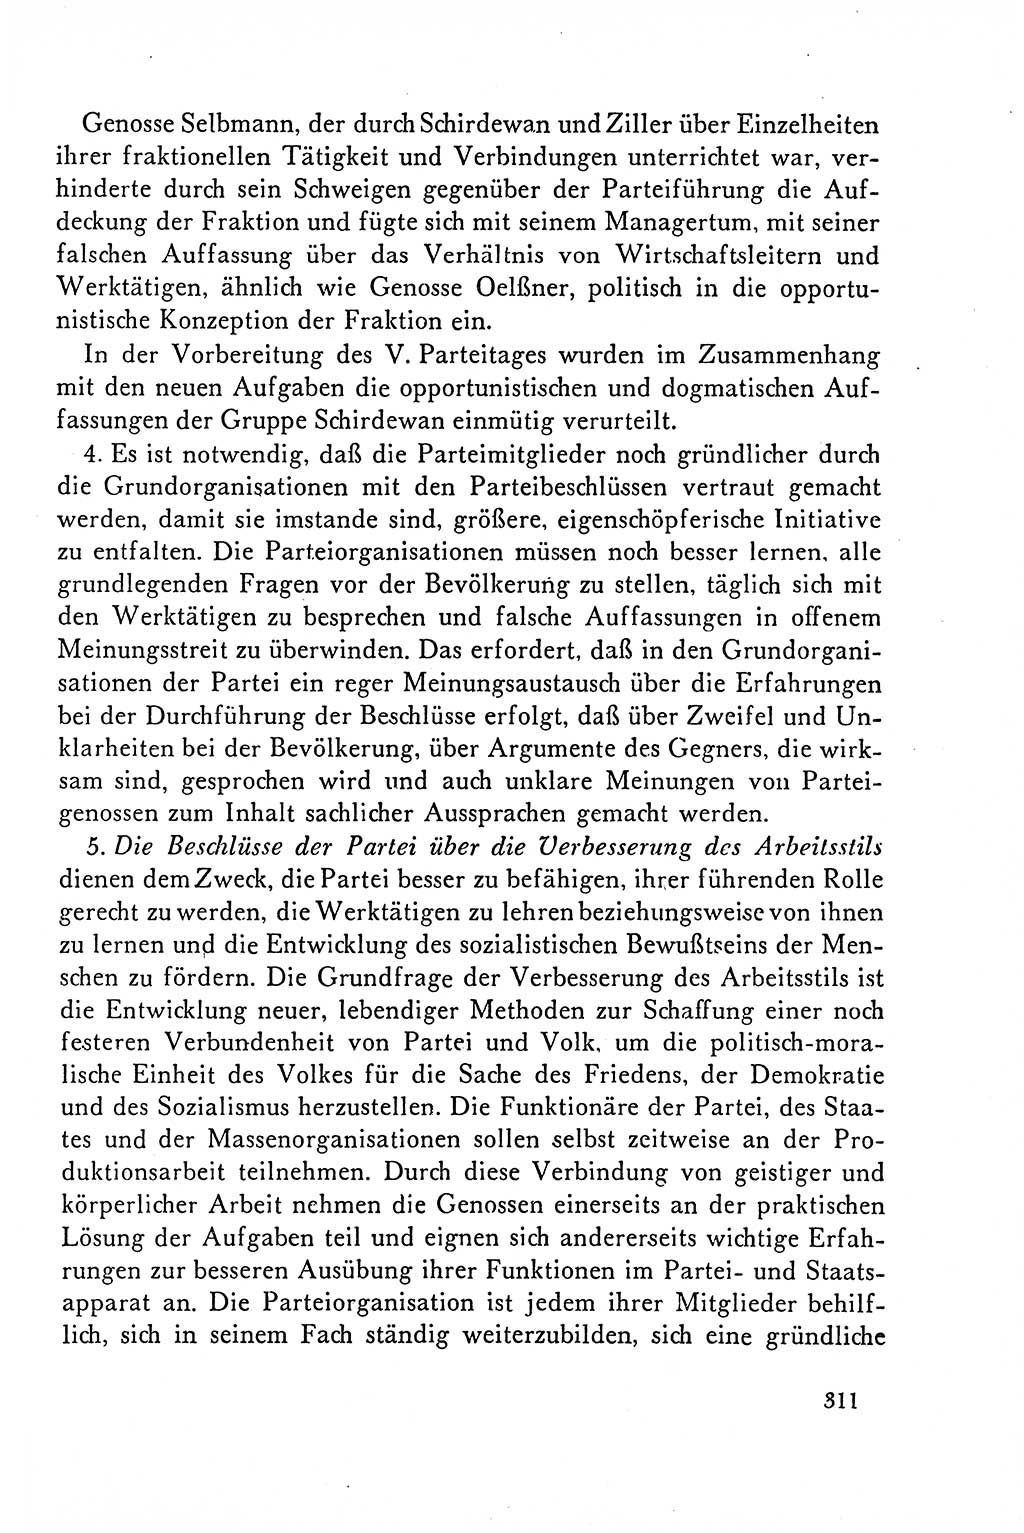 Dokumente der Sozialistischen Einheitspartei Deutschlands (SED) [Deutsche Demokratische Republik (DDR)] 1958-1959, Seite 311 (Dok. SED DDR 1958-1959, S. 311)